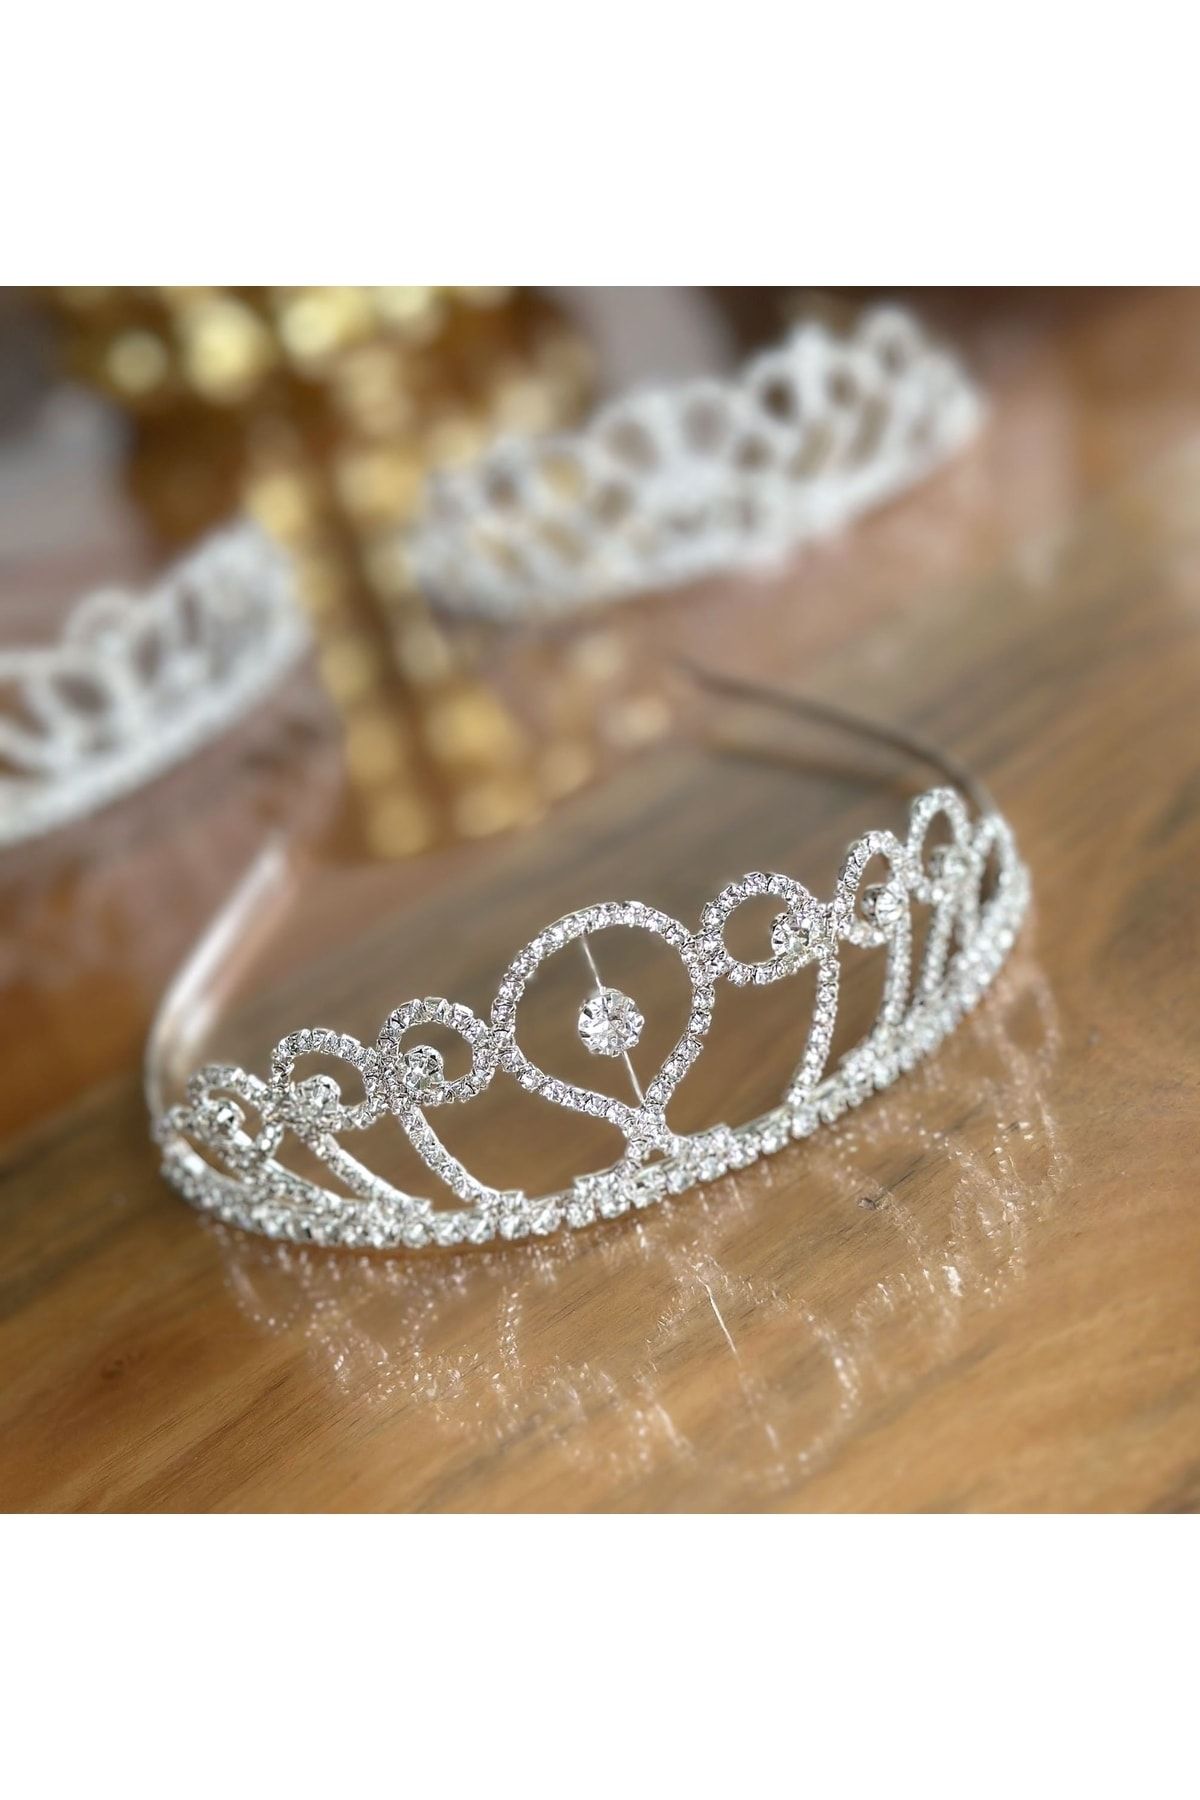 QUEEN AKSESUAR Lüks Metal Gümüş Kristal Motifli Taşlı Prenses Kraliçe Gelin Doğum Günü Tacı Özel Gün Çocuk Taç No1